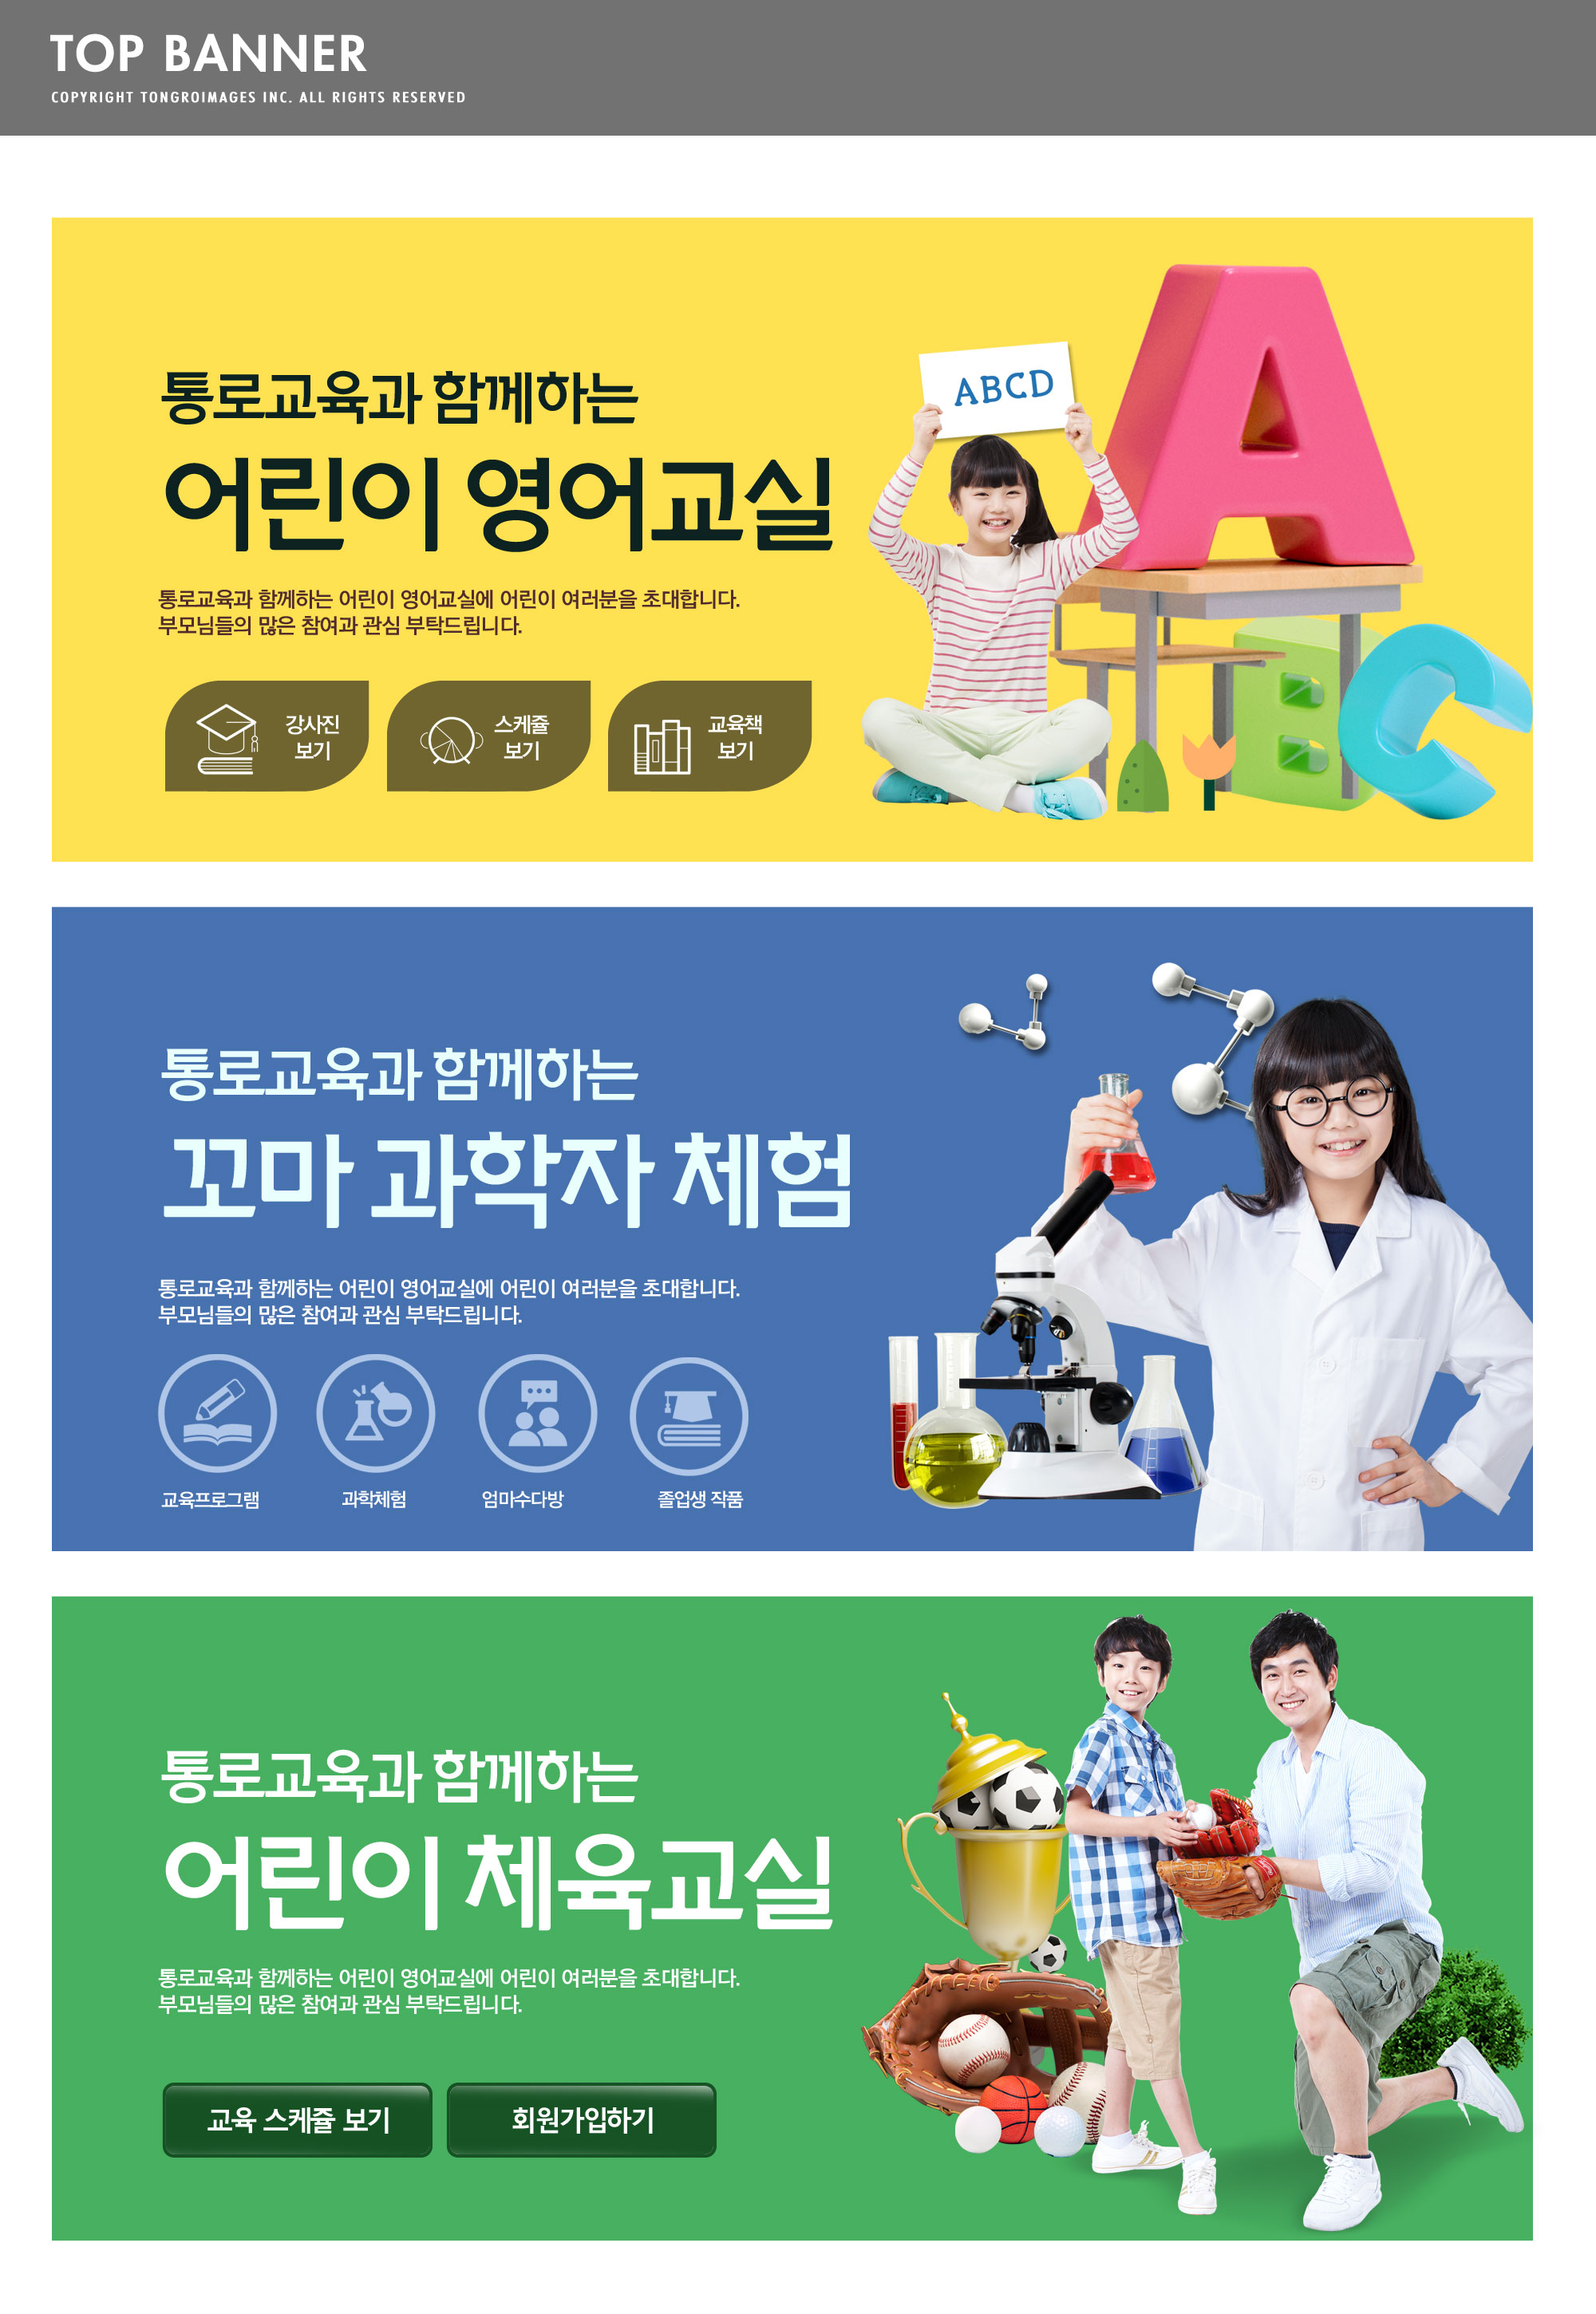 儿童教育学习主题网站广告Banner设计套装插图